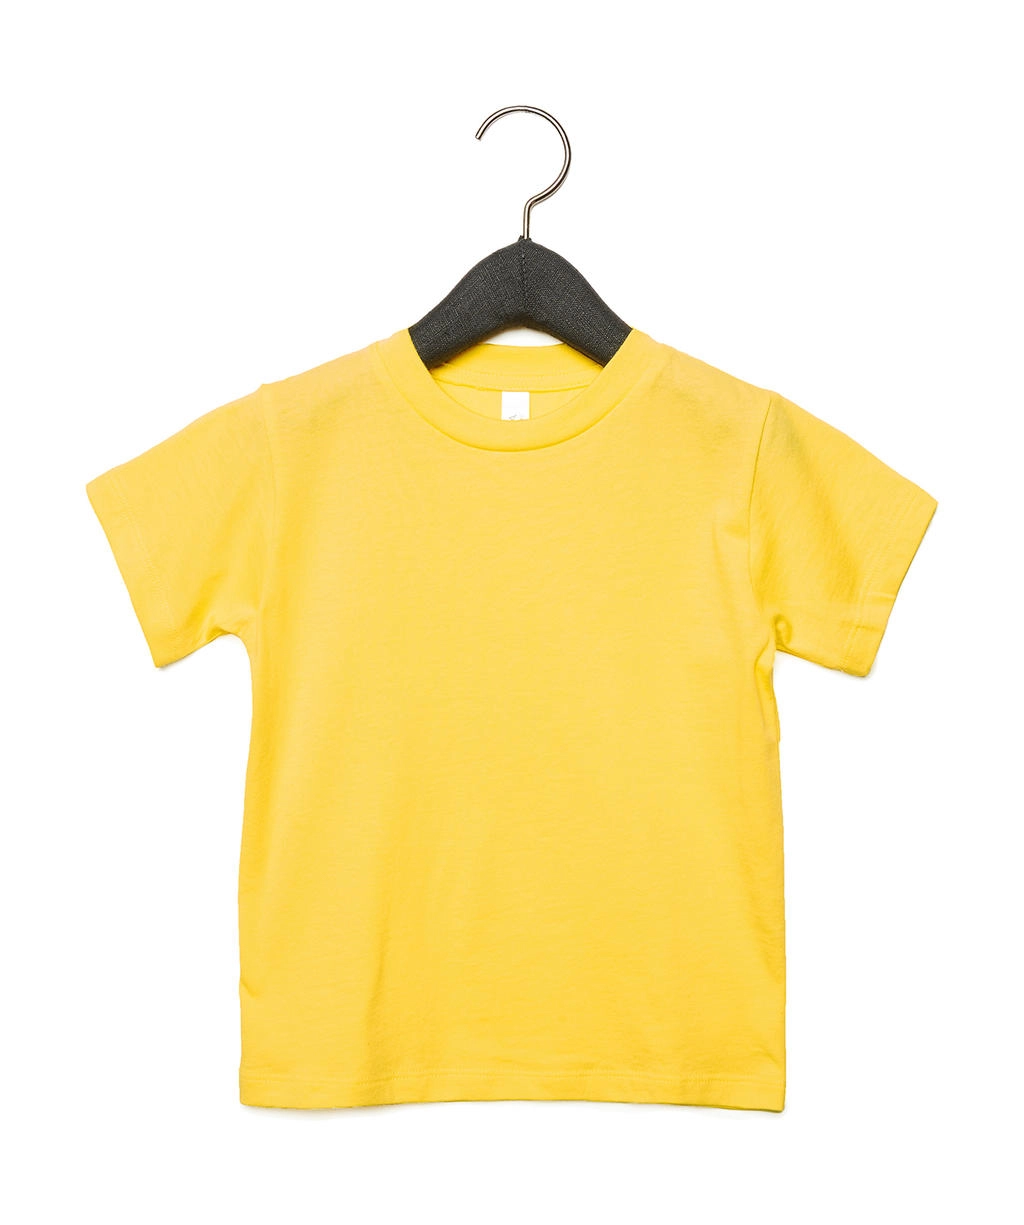 Toddler Jersey Short Sleeve Tee zum Besticken und Bedrucken in der Farbe Yellow mit Ihren Logo, Schriftzug oder Motiv.